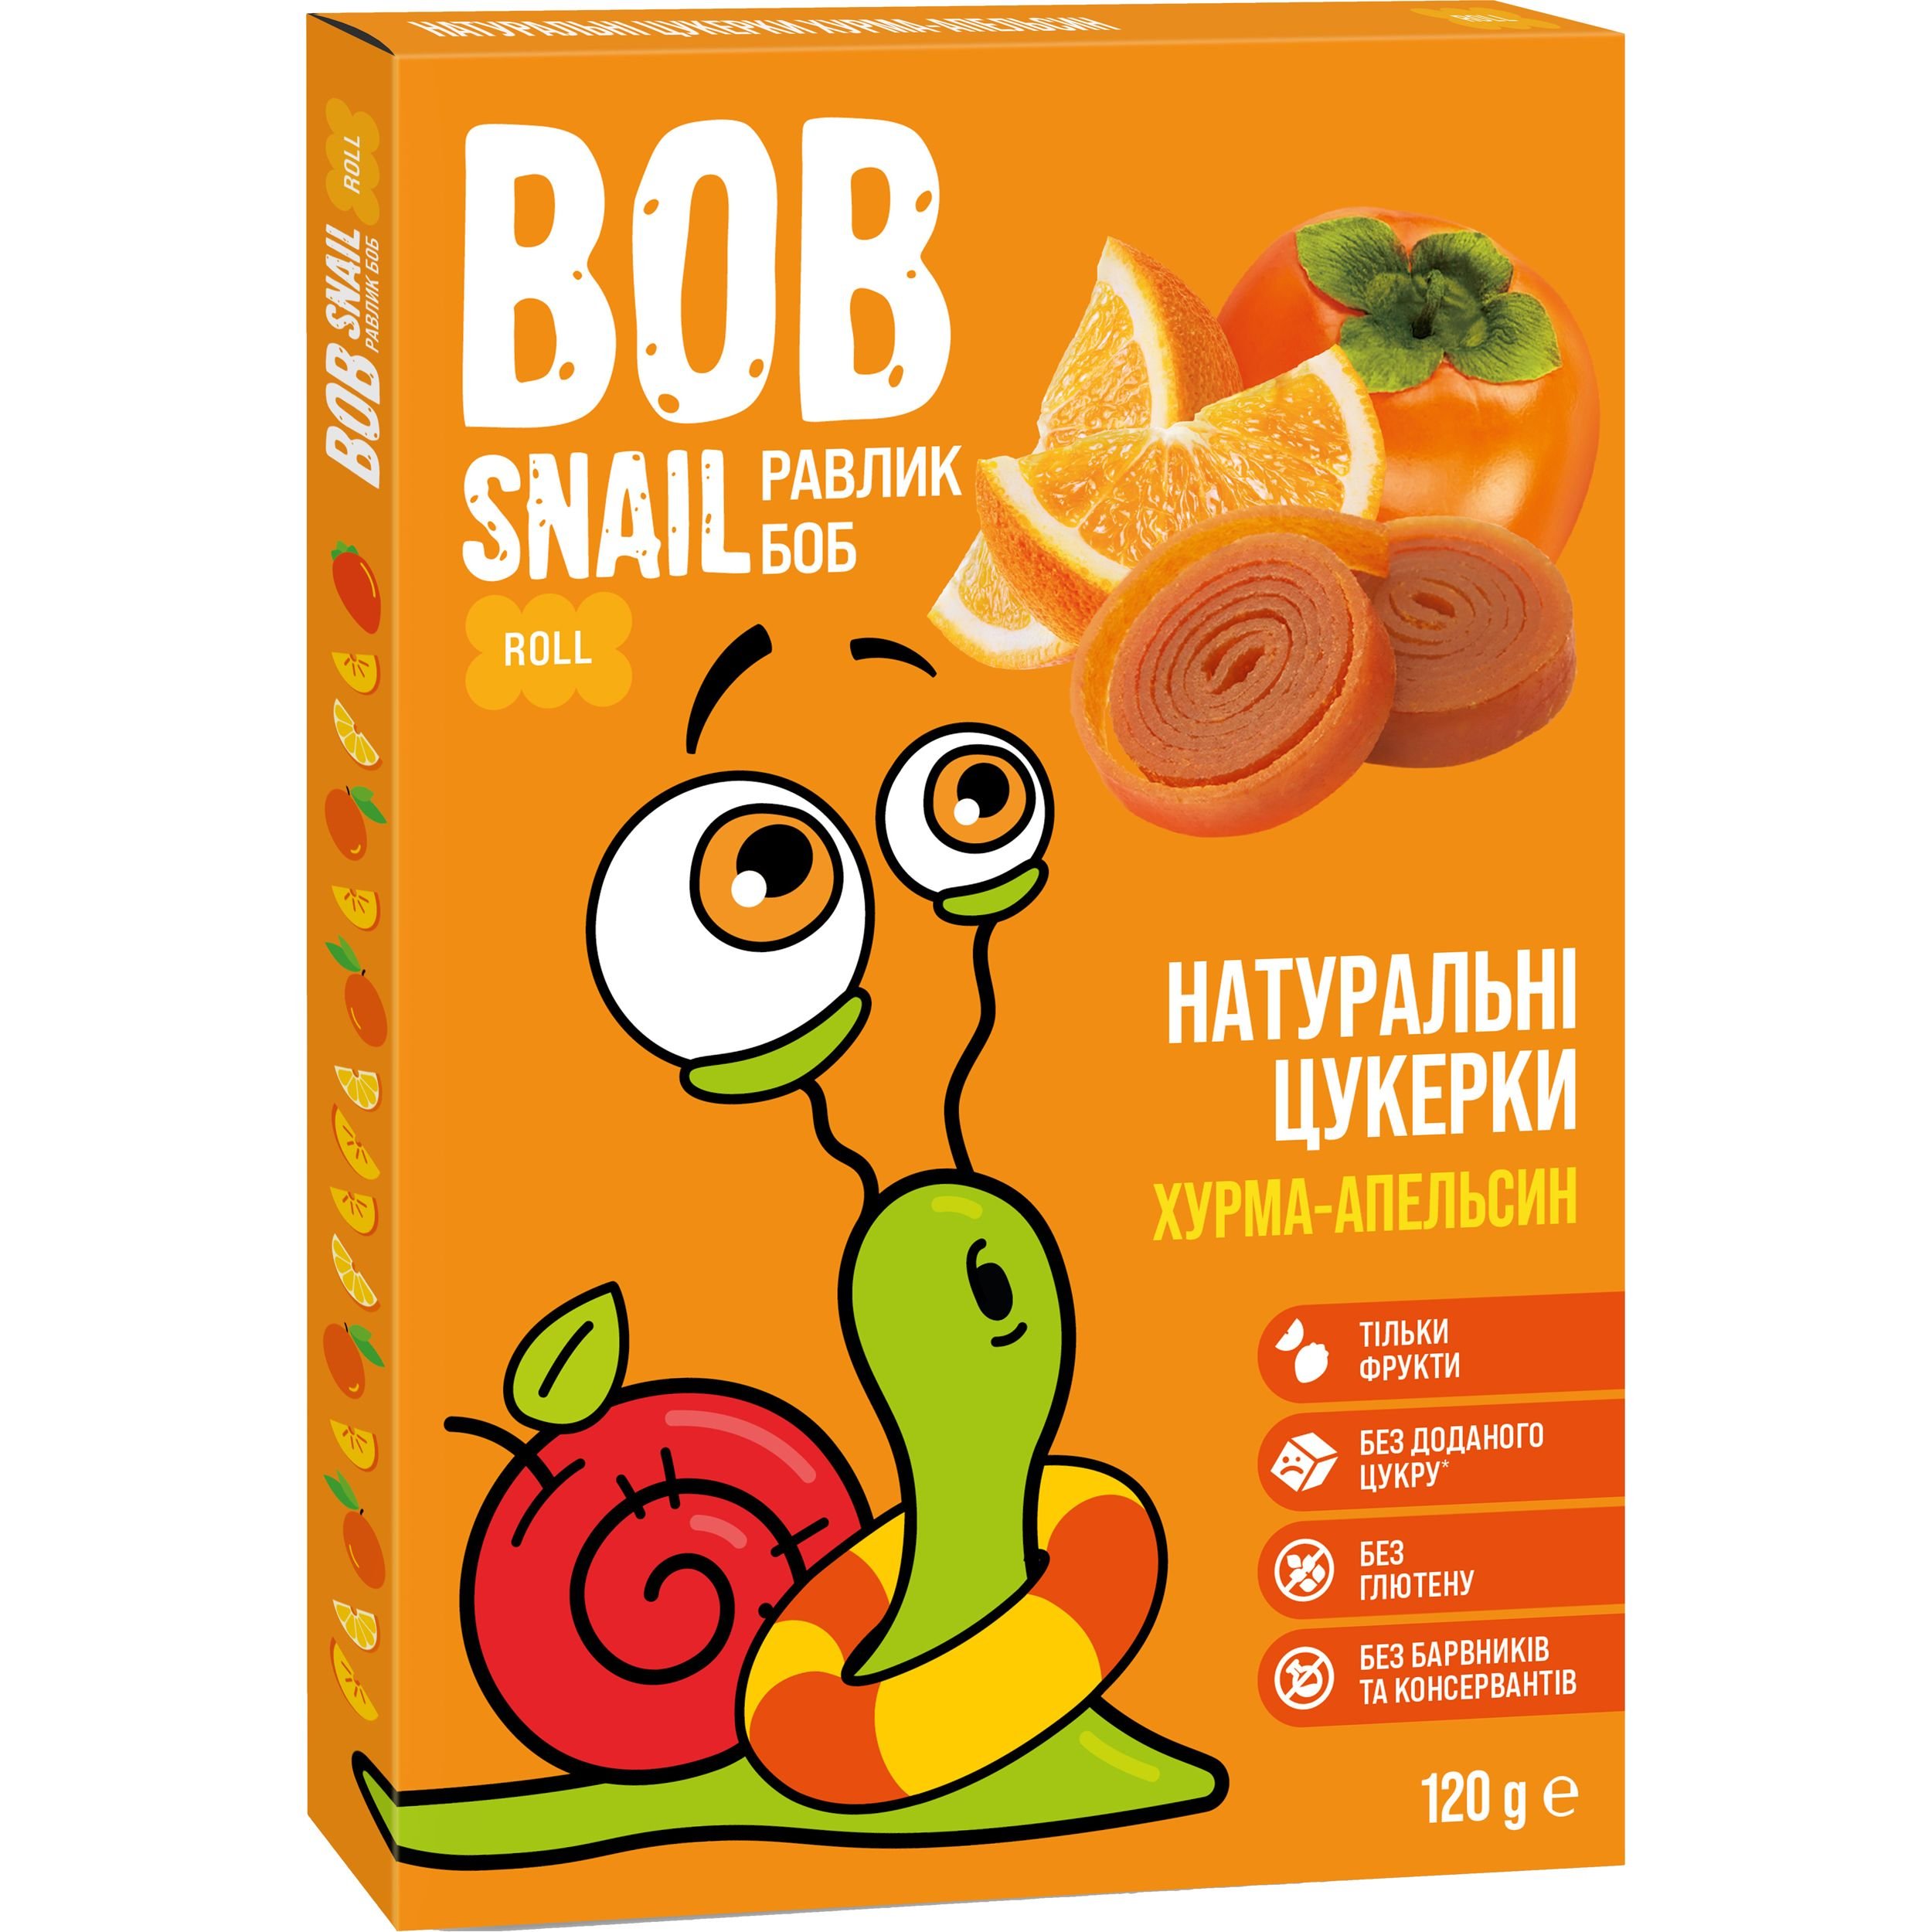 Фруктовые конфеты Bob Snail из Хурмы и Апельсина 120 г - фото 1